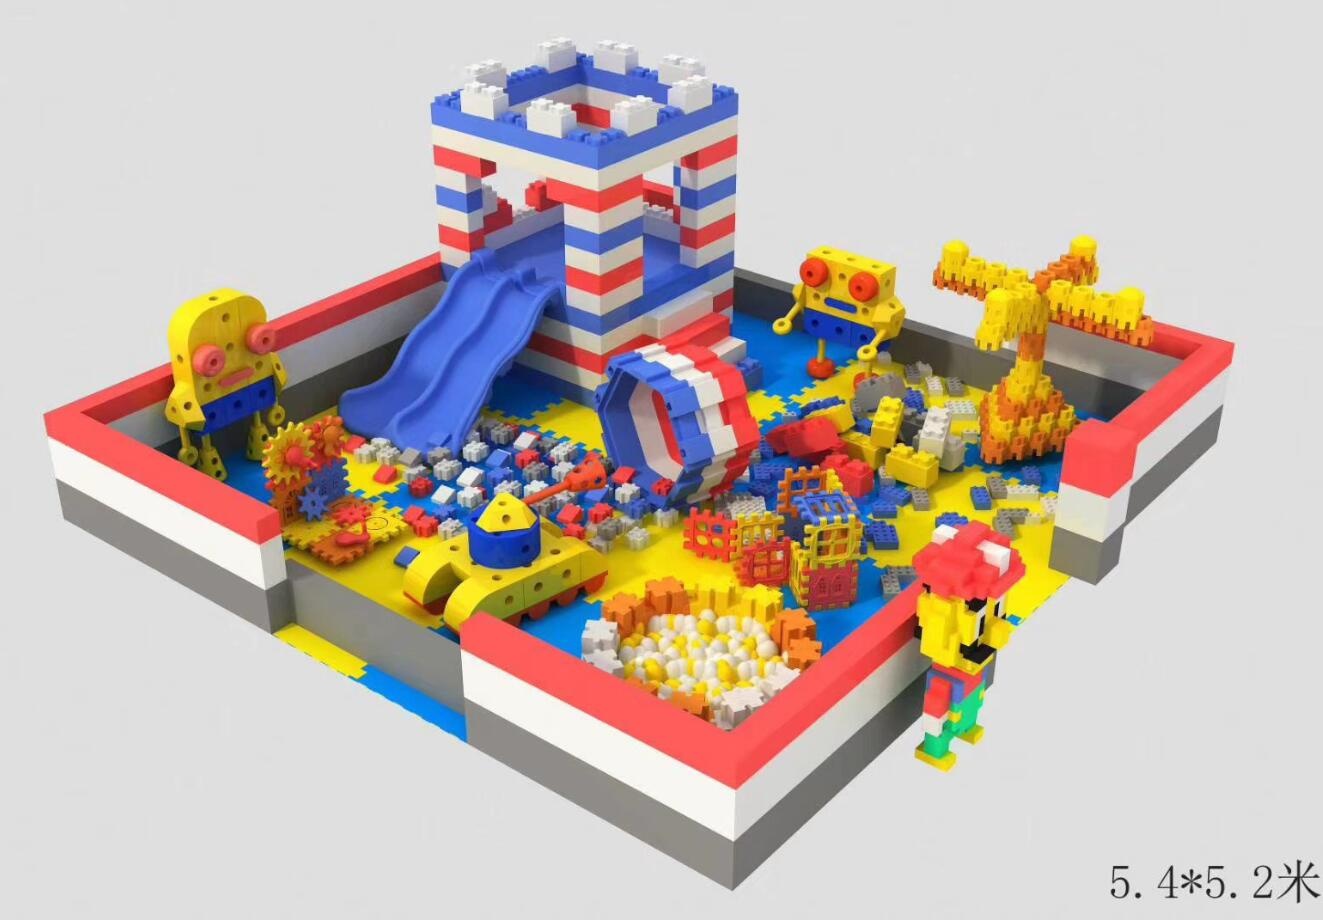 Kids building blocks playground